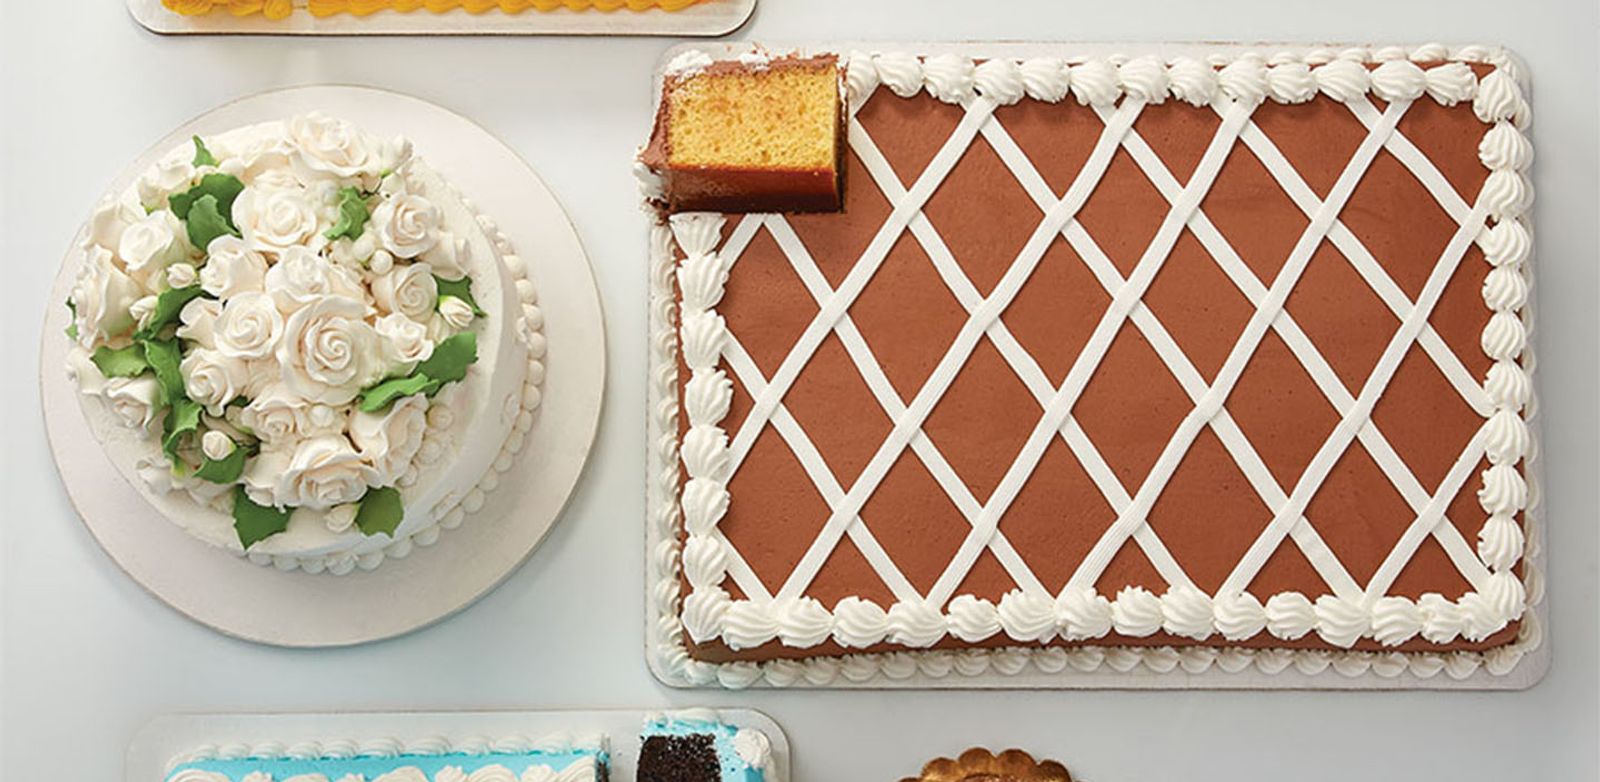 The Ultimate Sheet Cake Guide [full, half & 1/4 size] - Better Baker Club